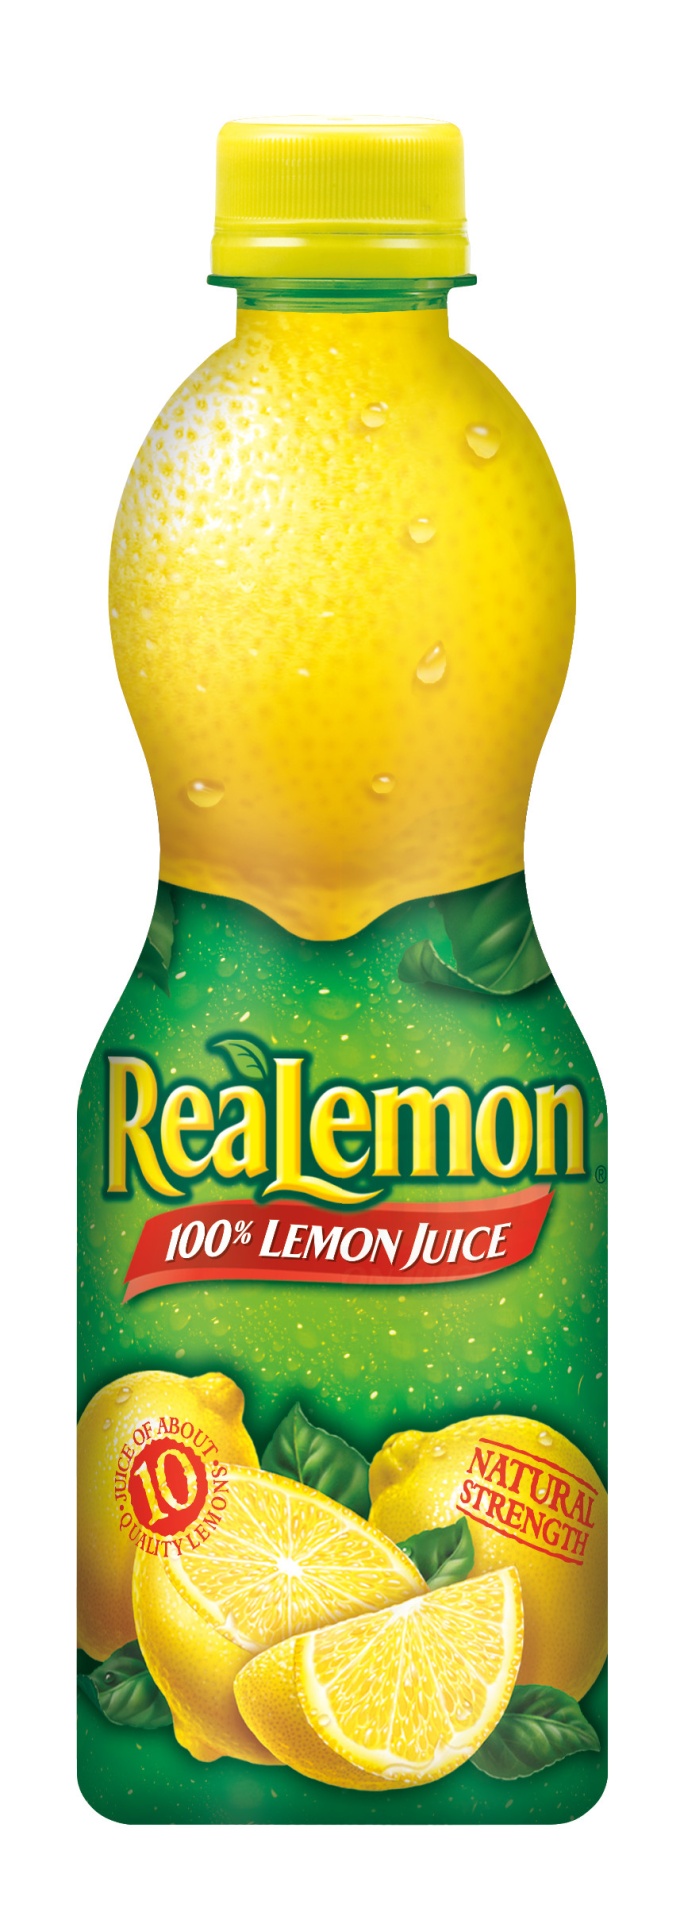 slide 1 of 2, ReaLemon 100% Lemon Juice Bottle, 15 fl oz